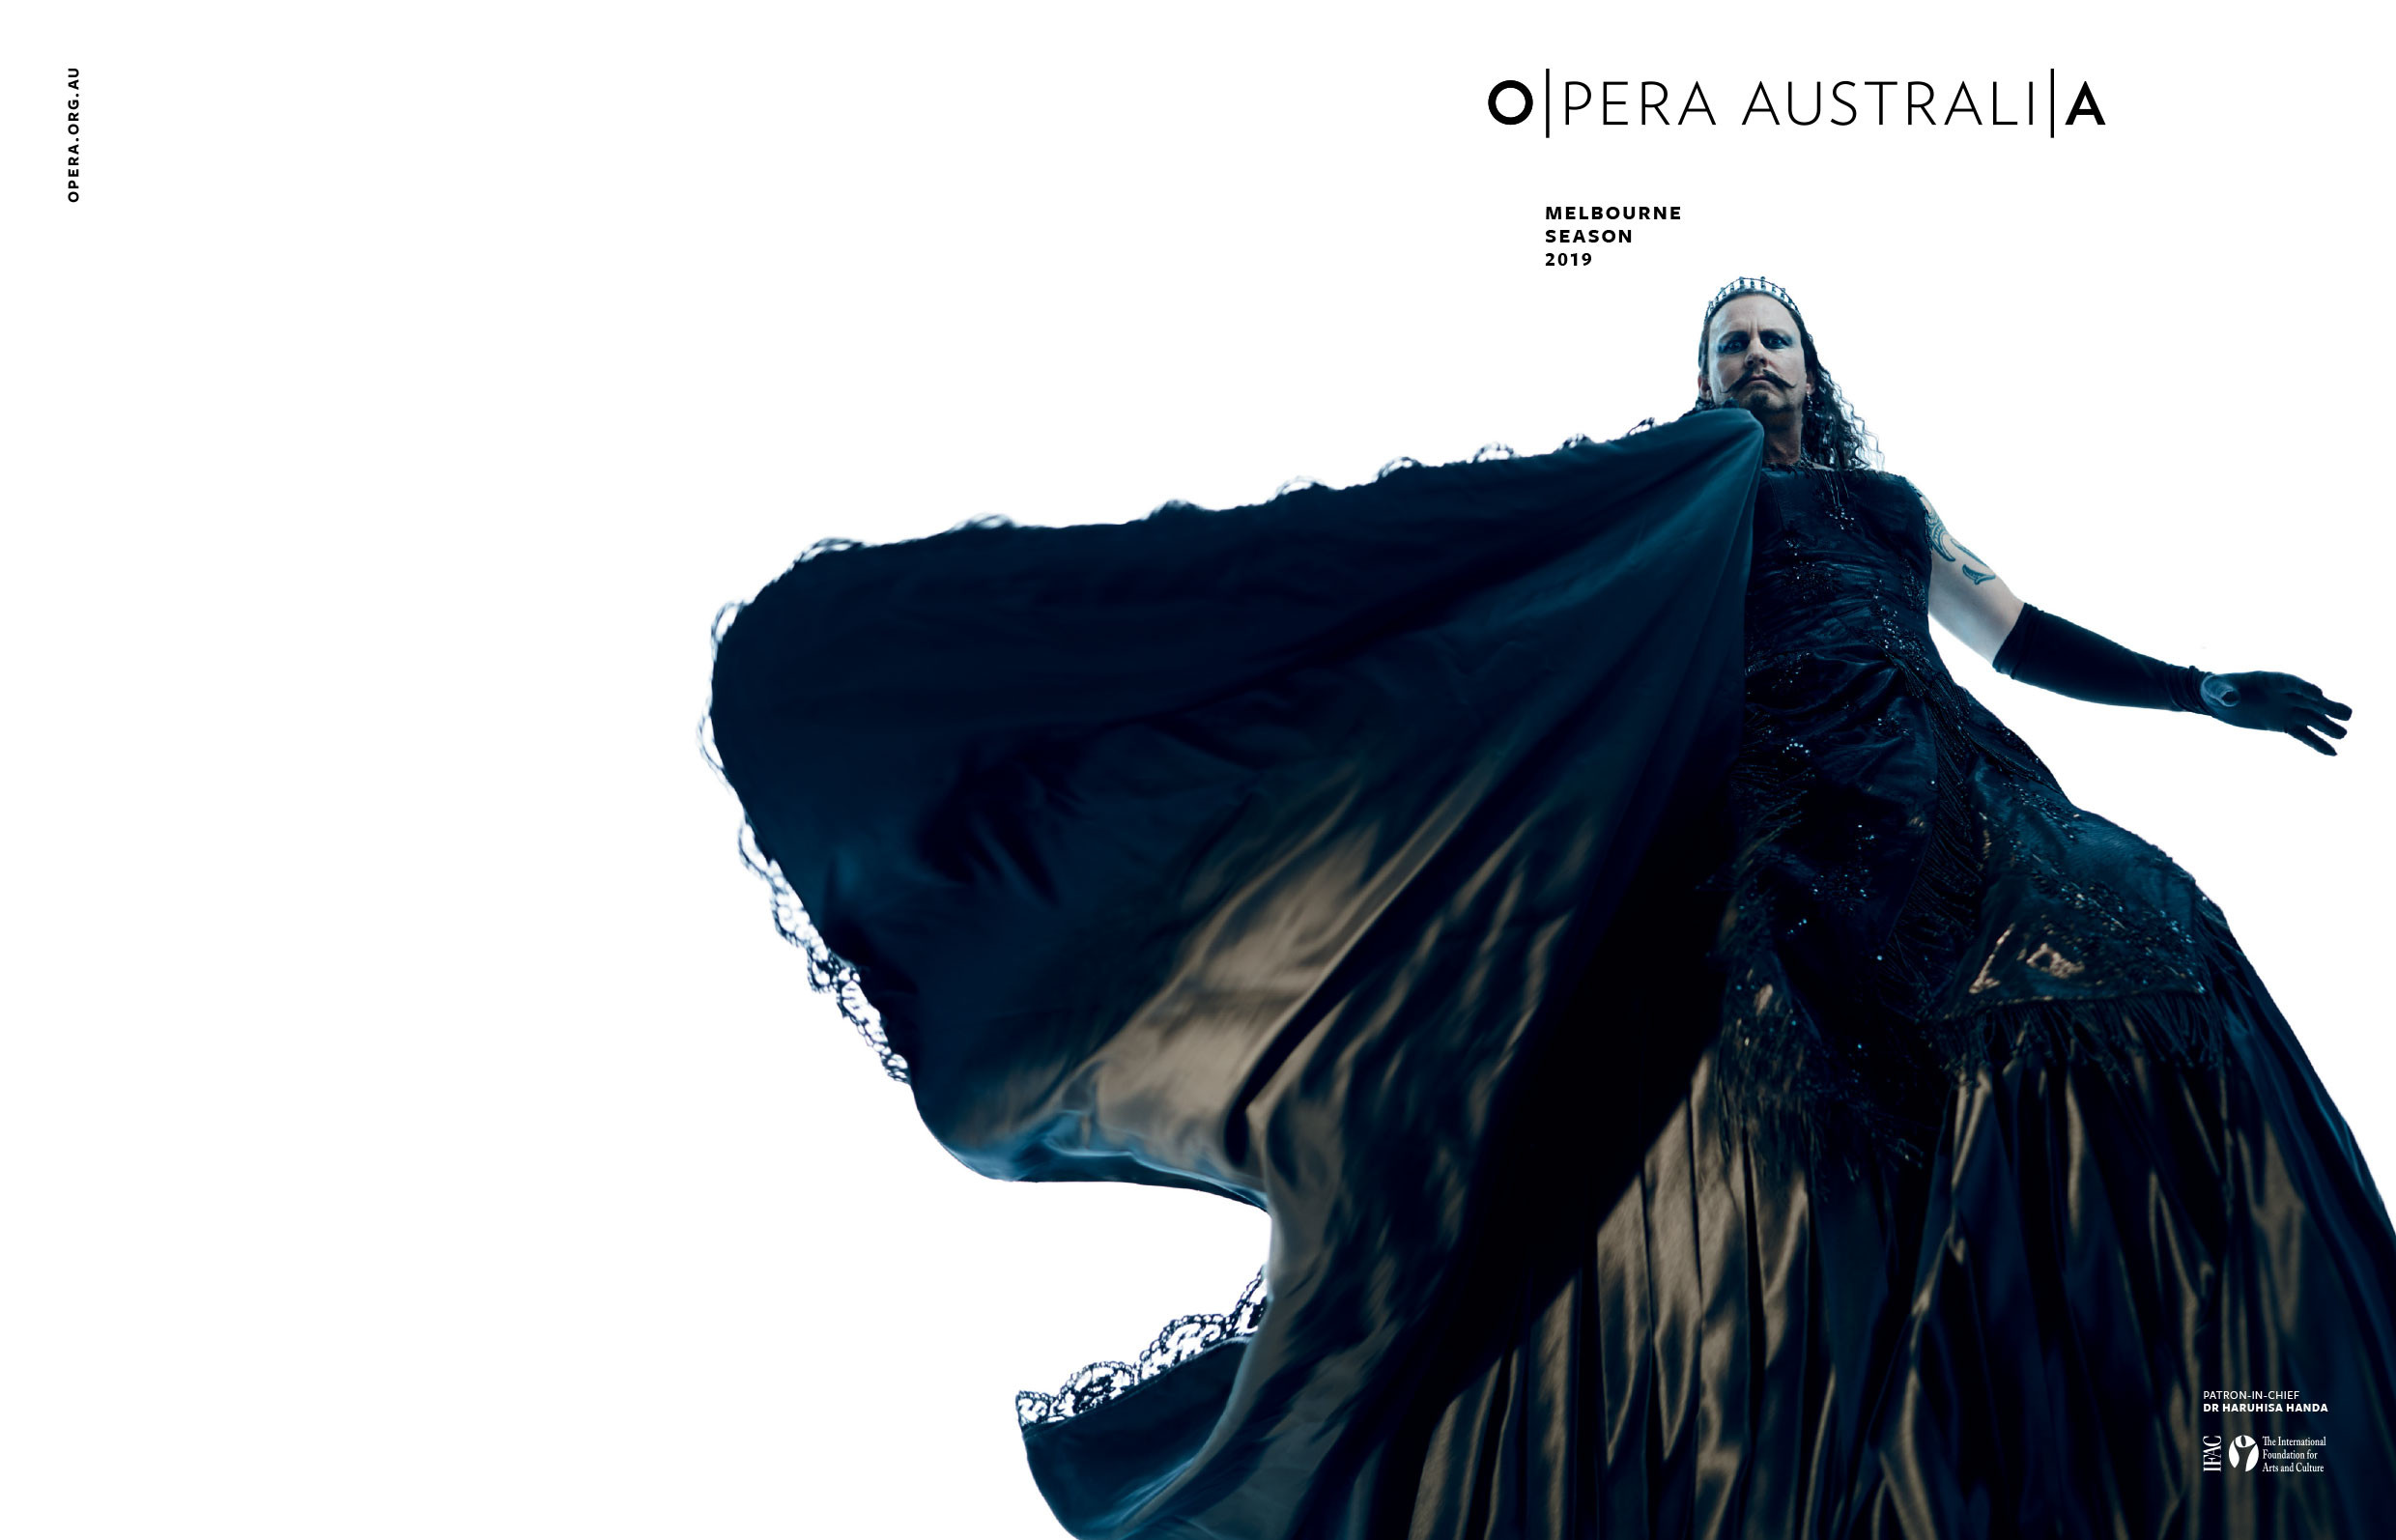 Opera Australia Season 2019